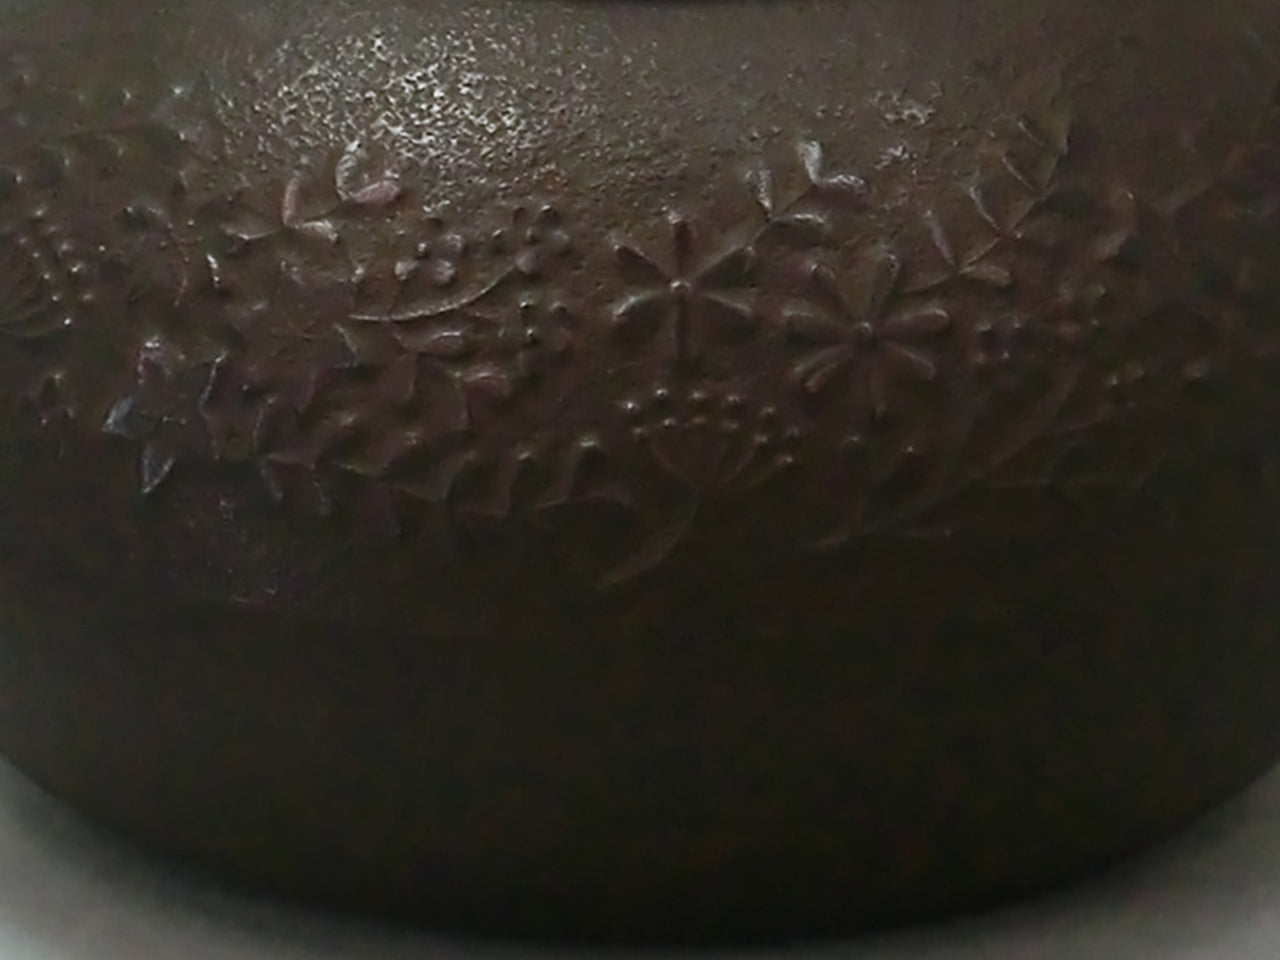 茶具 鐵壺 花環 0.6L 佐佐木奈美 南部鐵器 金屬工藝品